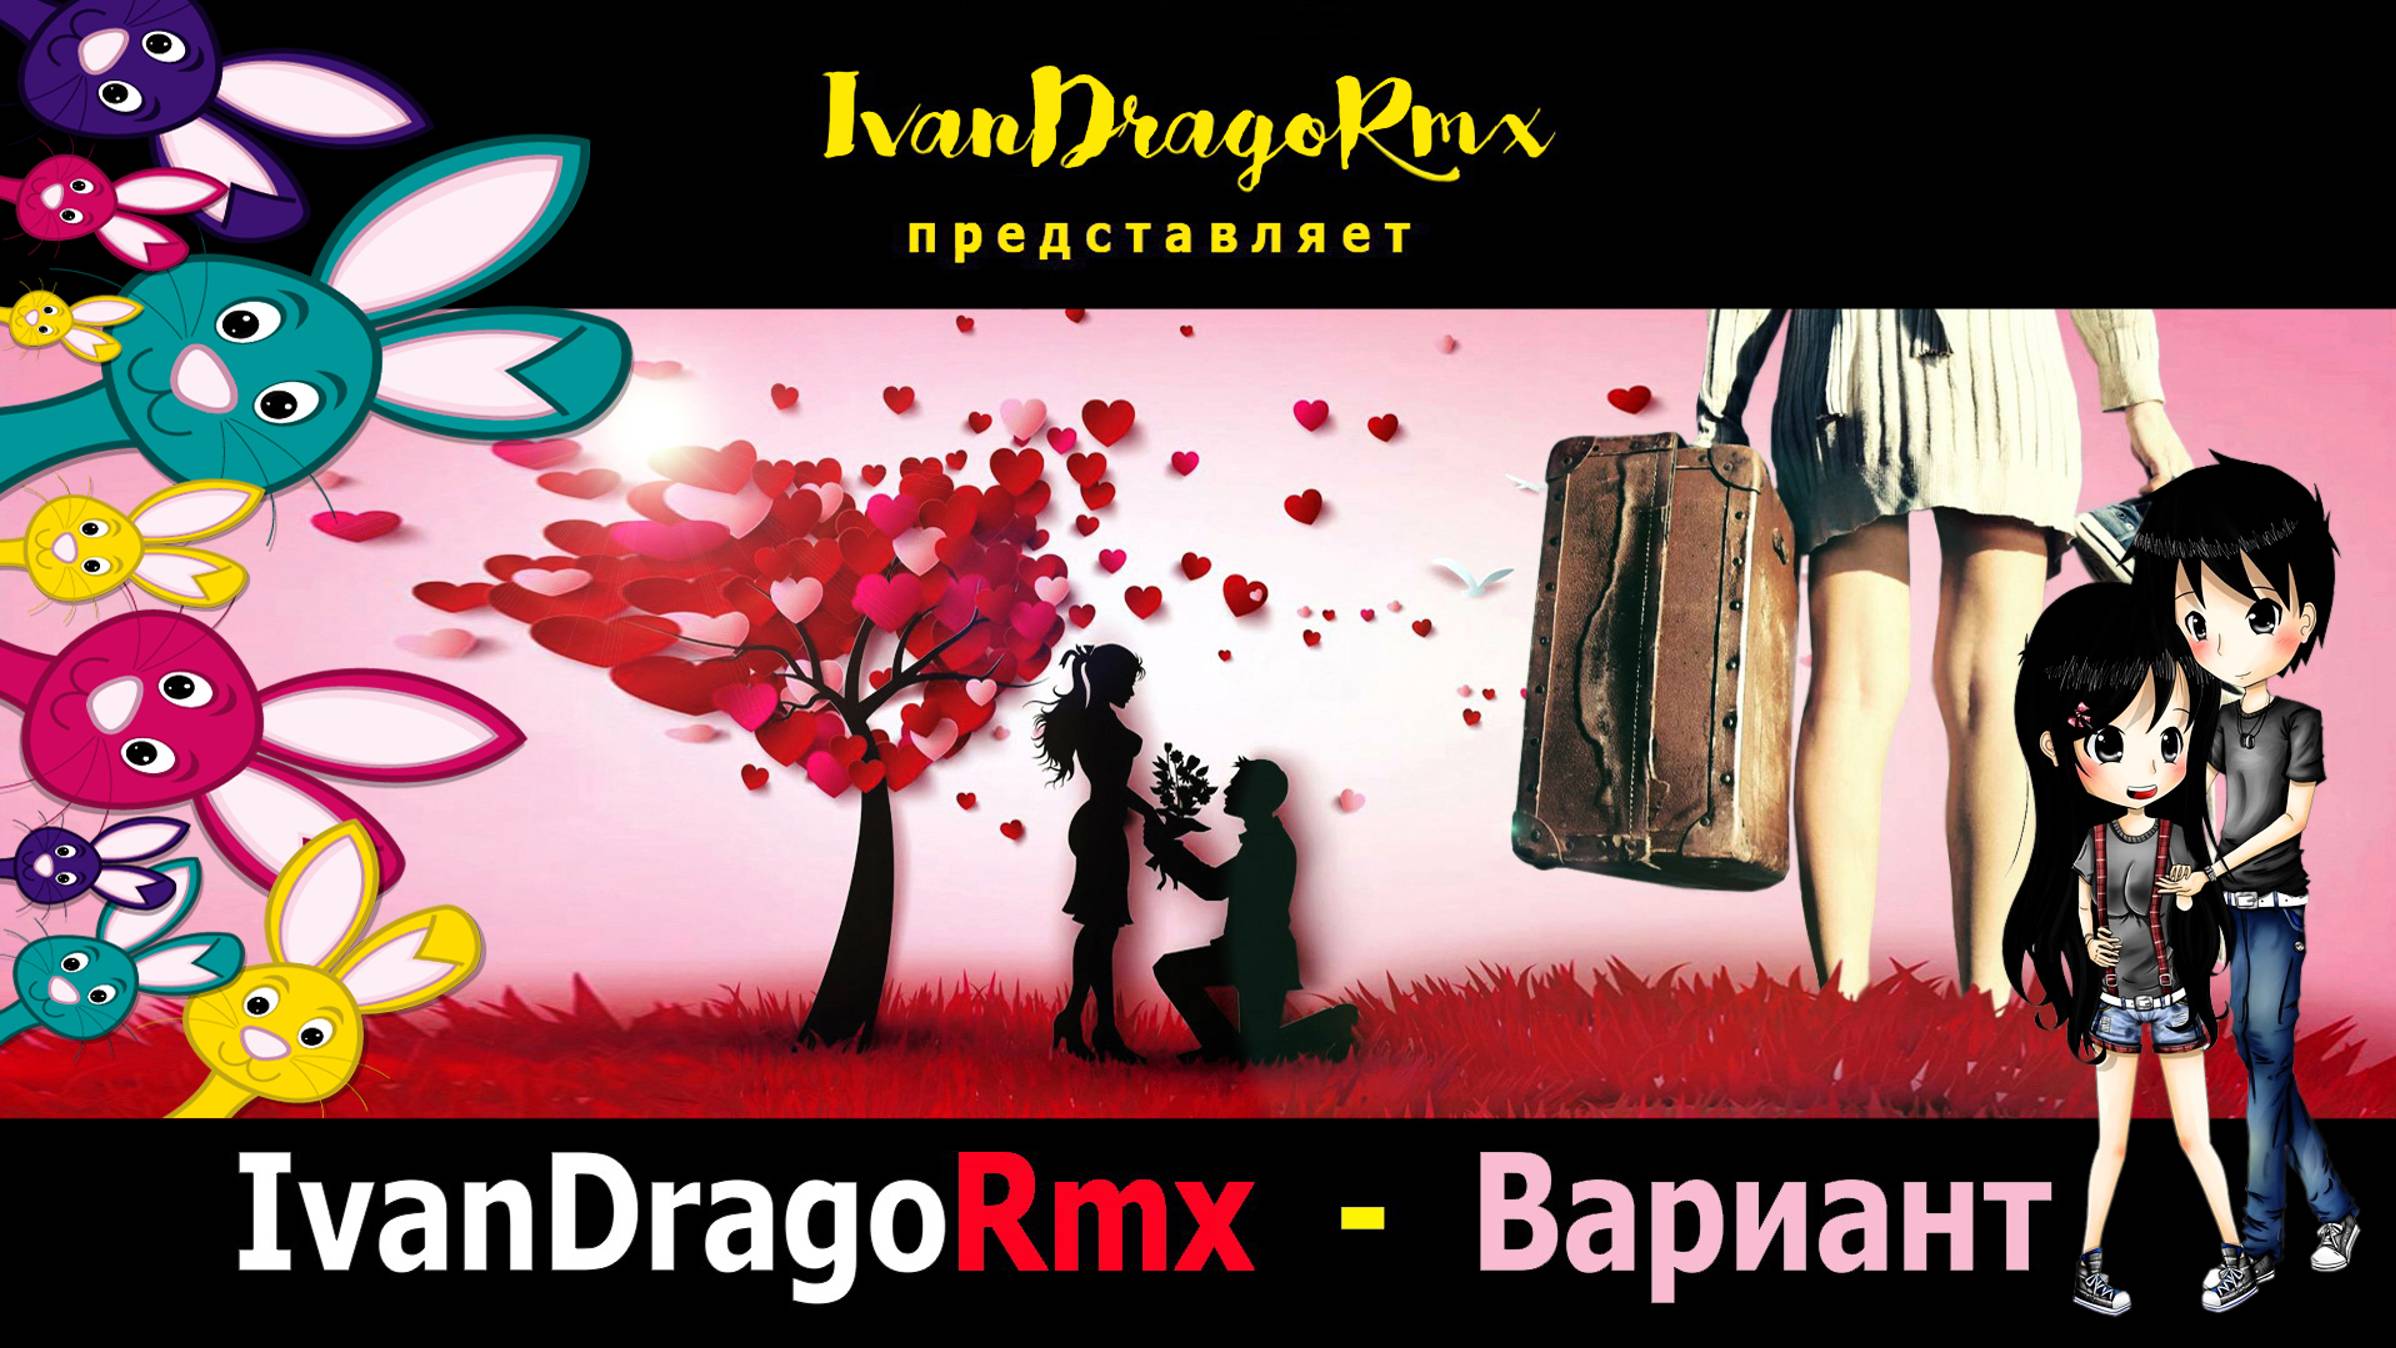 IvanDragoRmx - Вариант